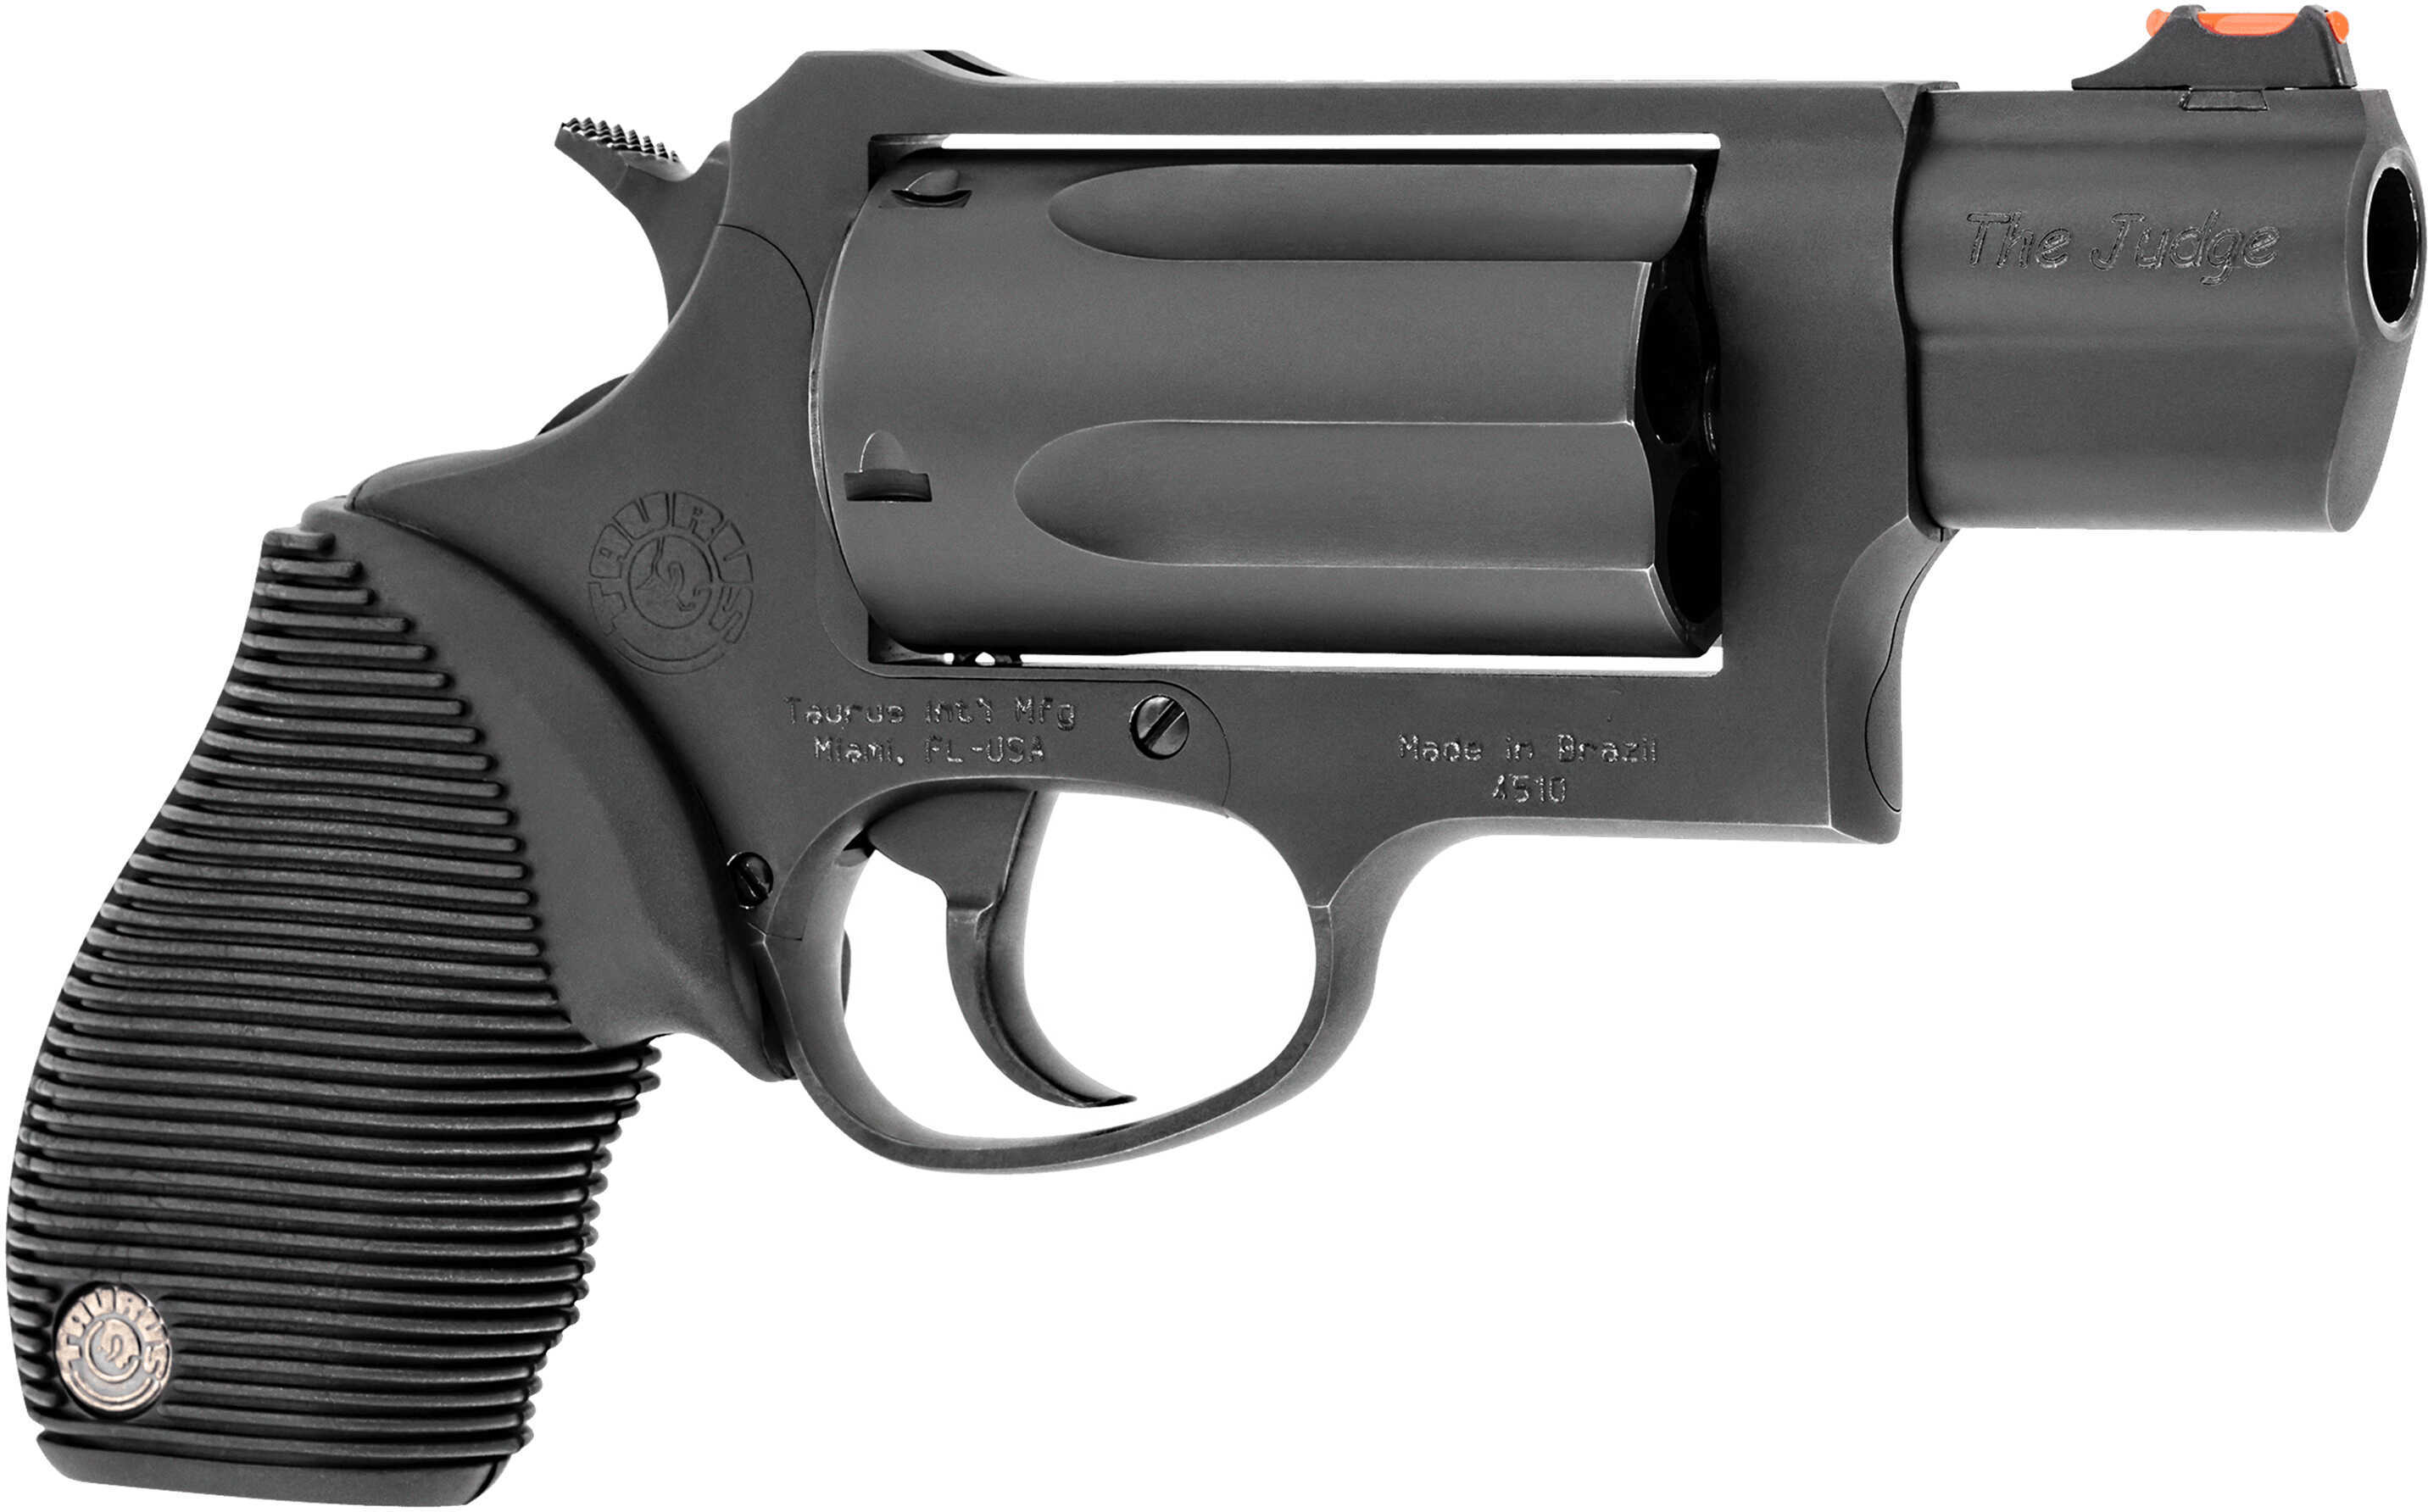 Taurus Judge Public Defender 45 Colt (LC) Caliber or 2.50" 410 Gauge with 2.50" Barrel 5 Shot Cylinder Overall Matte Black Oxide Finish Steel & Black Ribber Grip Fiber Optic Front Sight